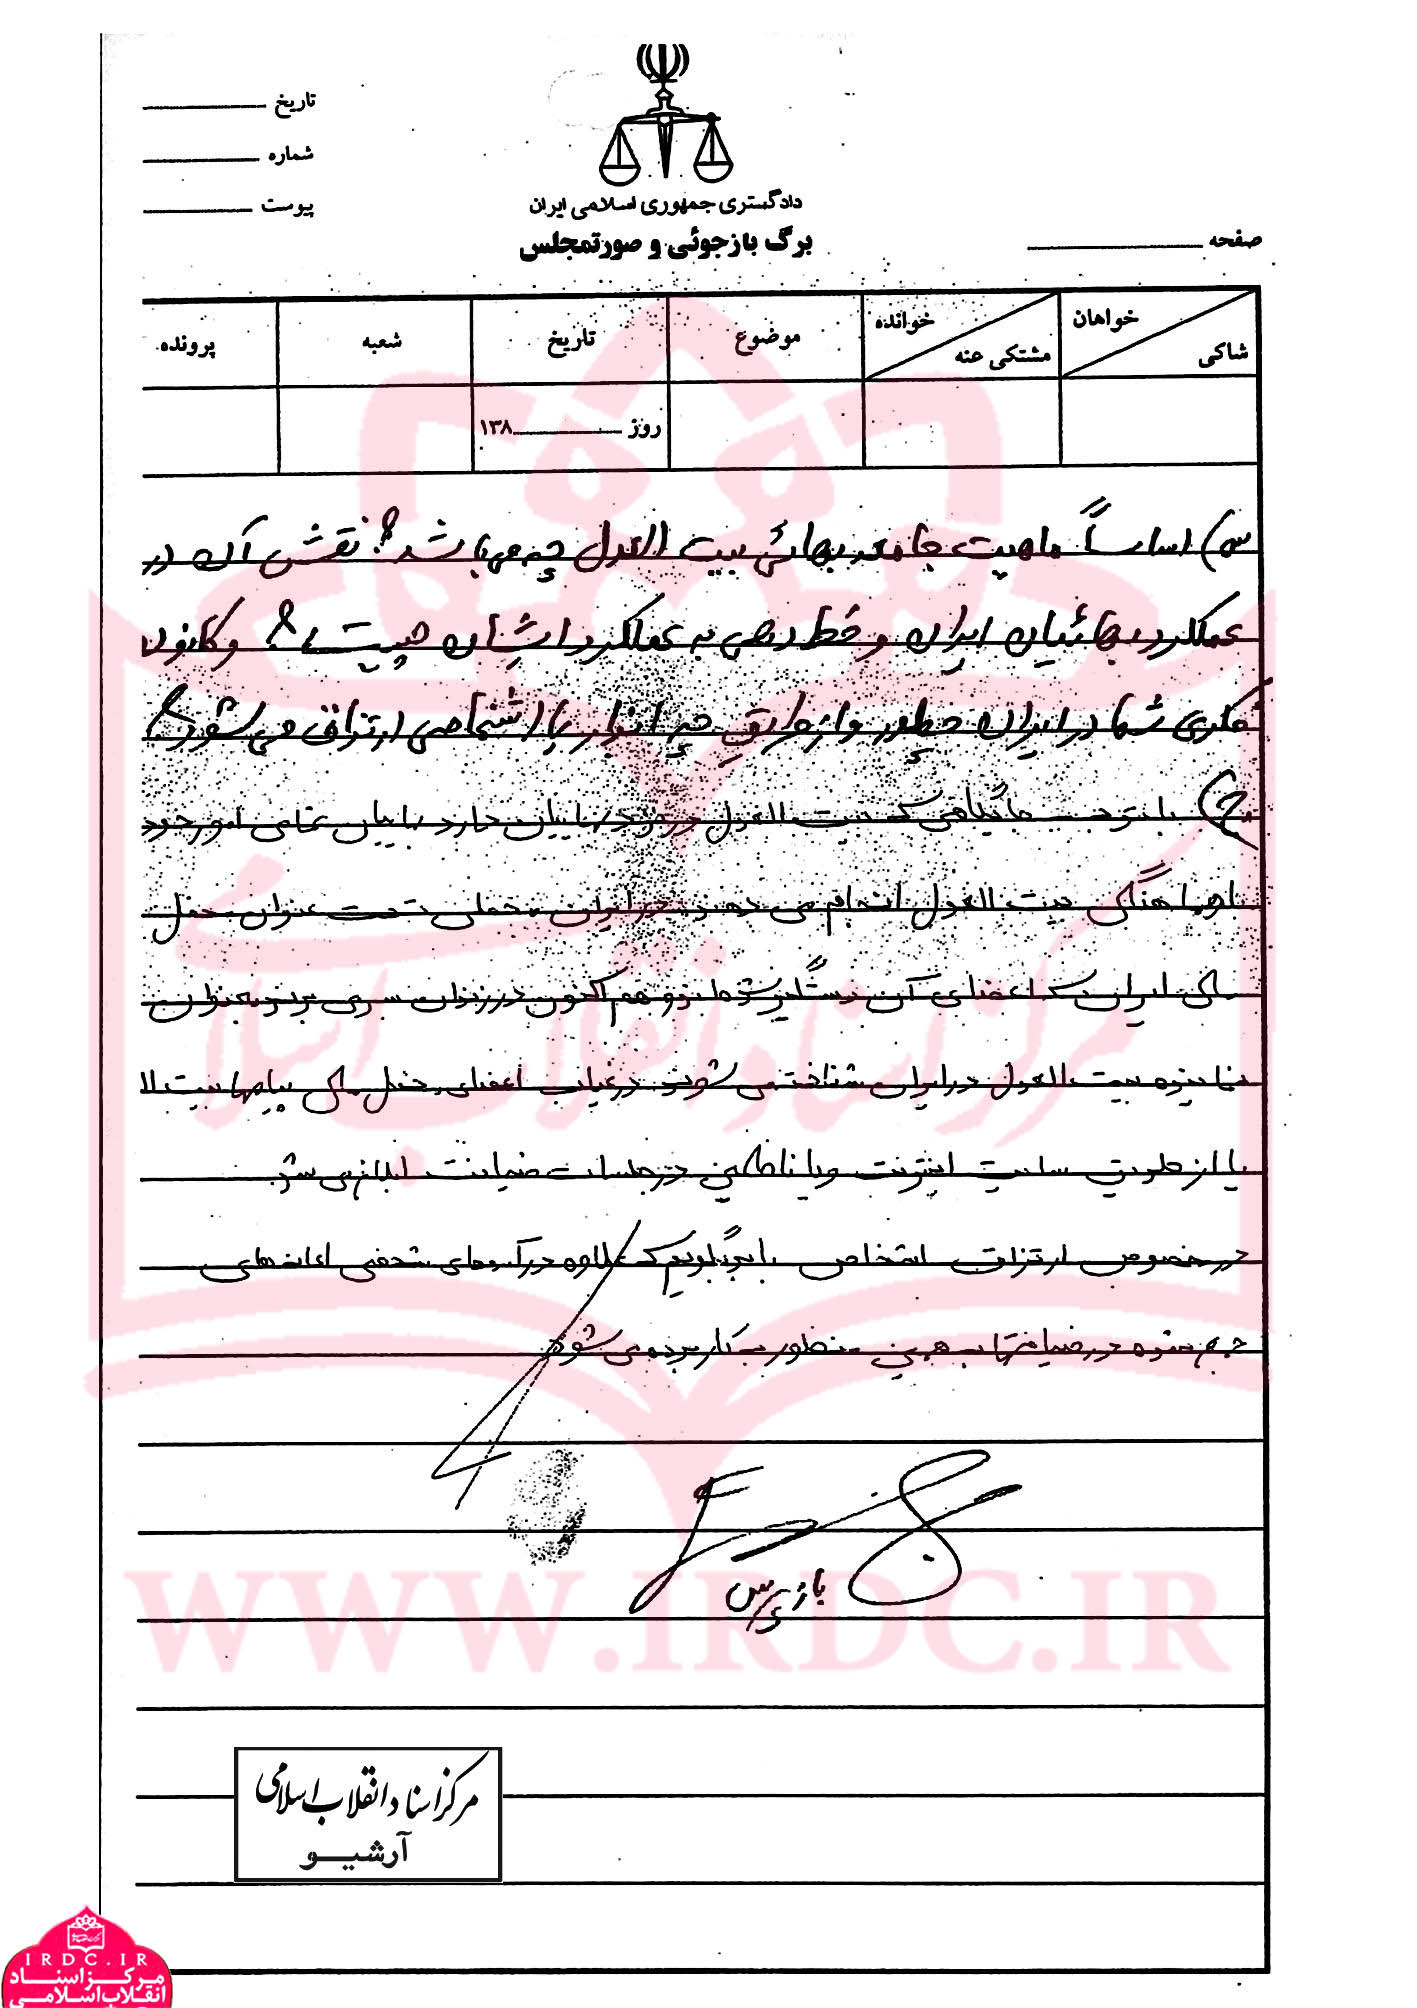 دستور بیت‌العدل برای شرکت افراد بهائی در انتخابات / رأی دادن بهائیان به موسوی در انتخابات سال 88